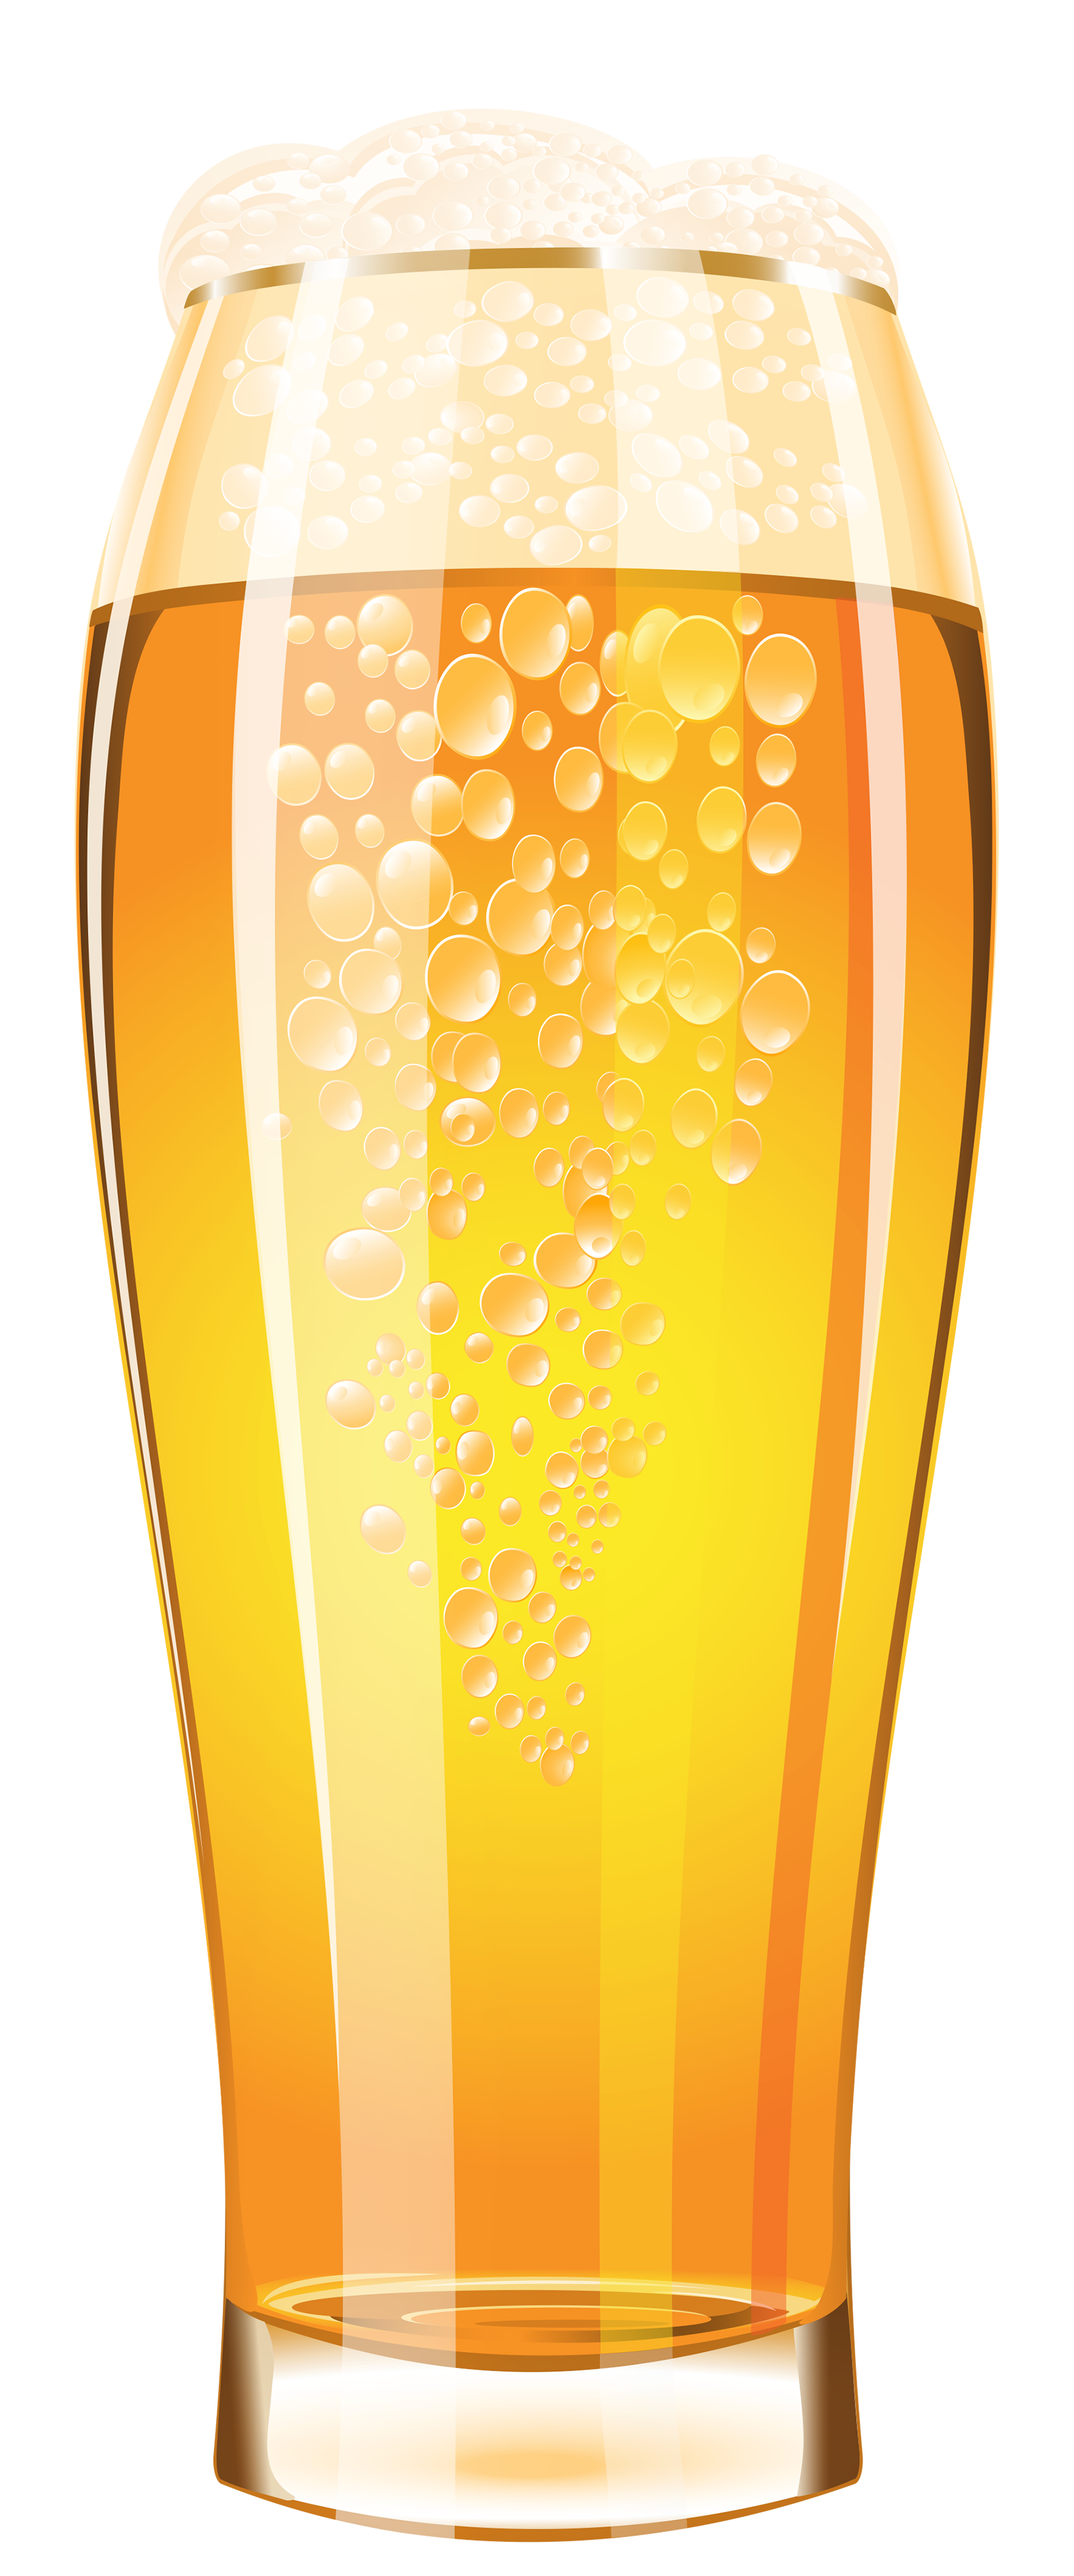 beer glass vector